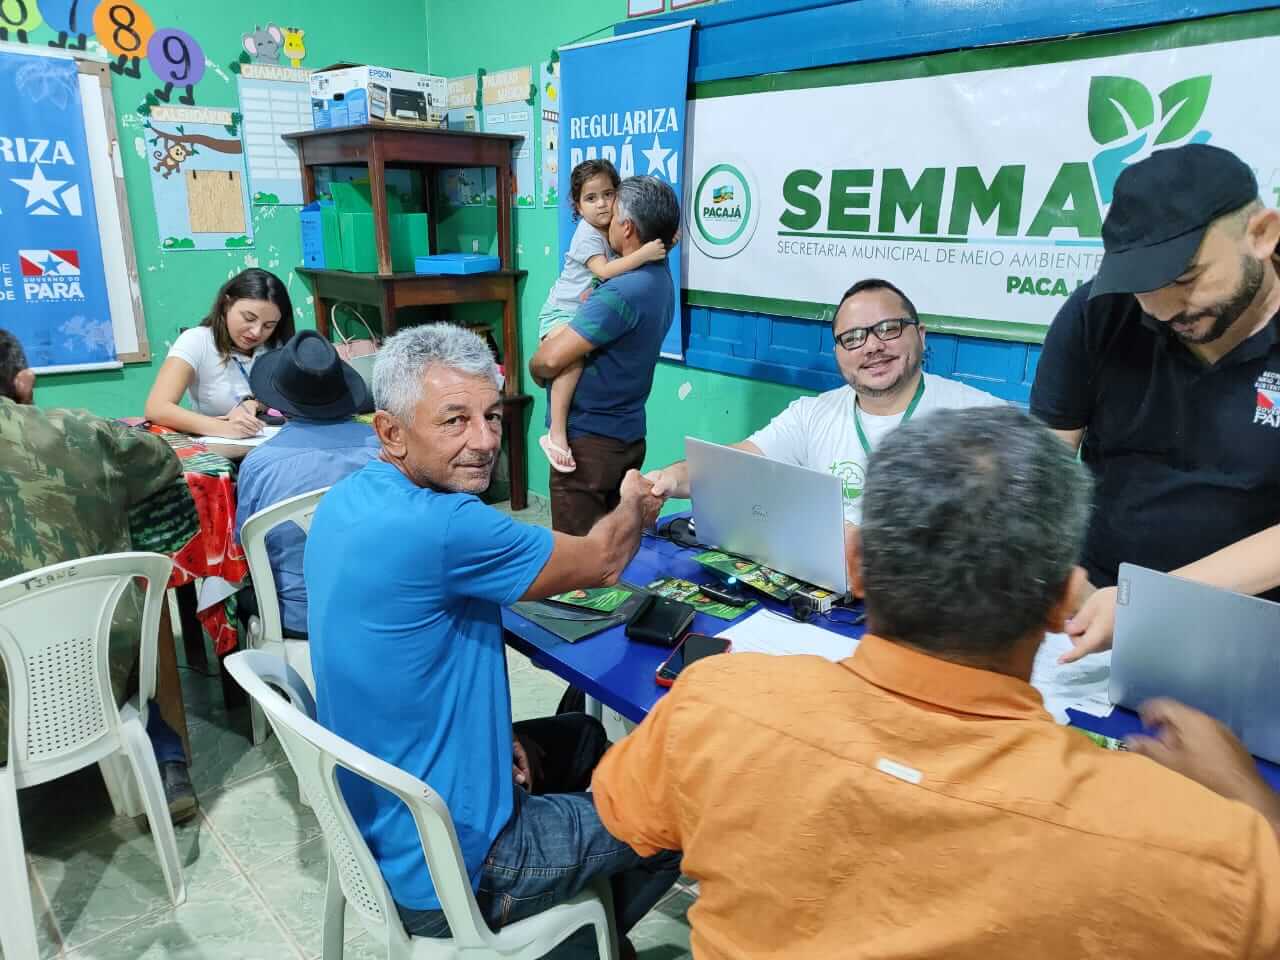 Floresta+ Amazônia atende mais de 390 agricultores familiares na regularização do CAR em Pacajá (PA)